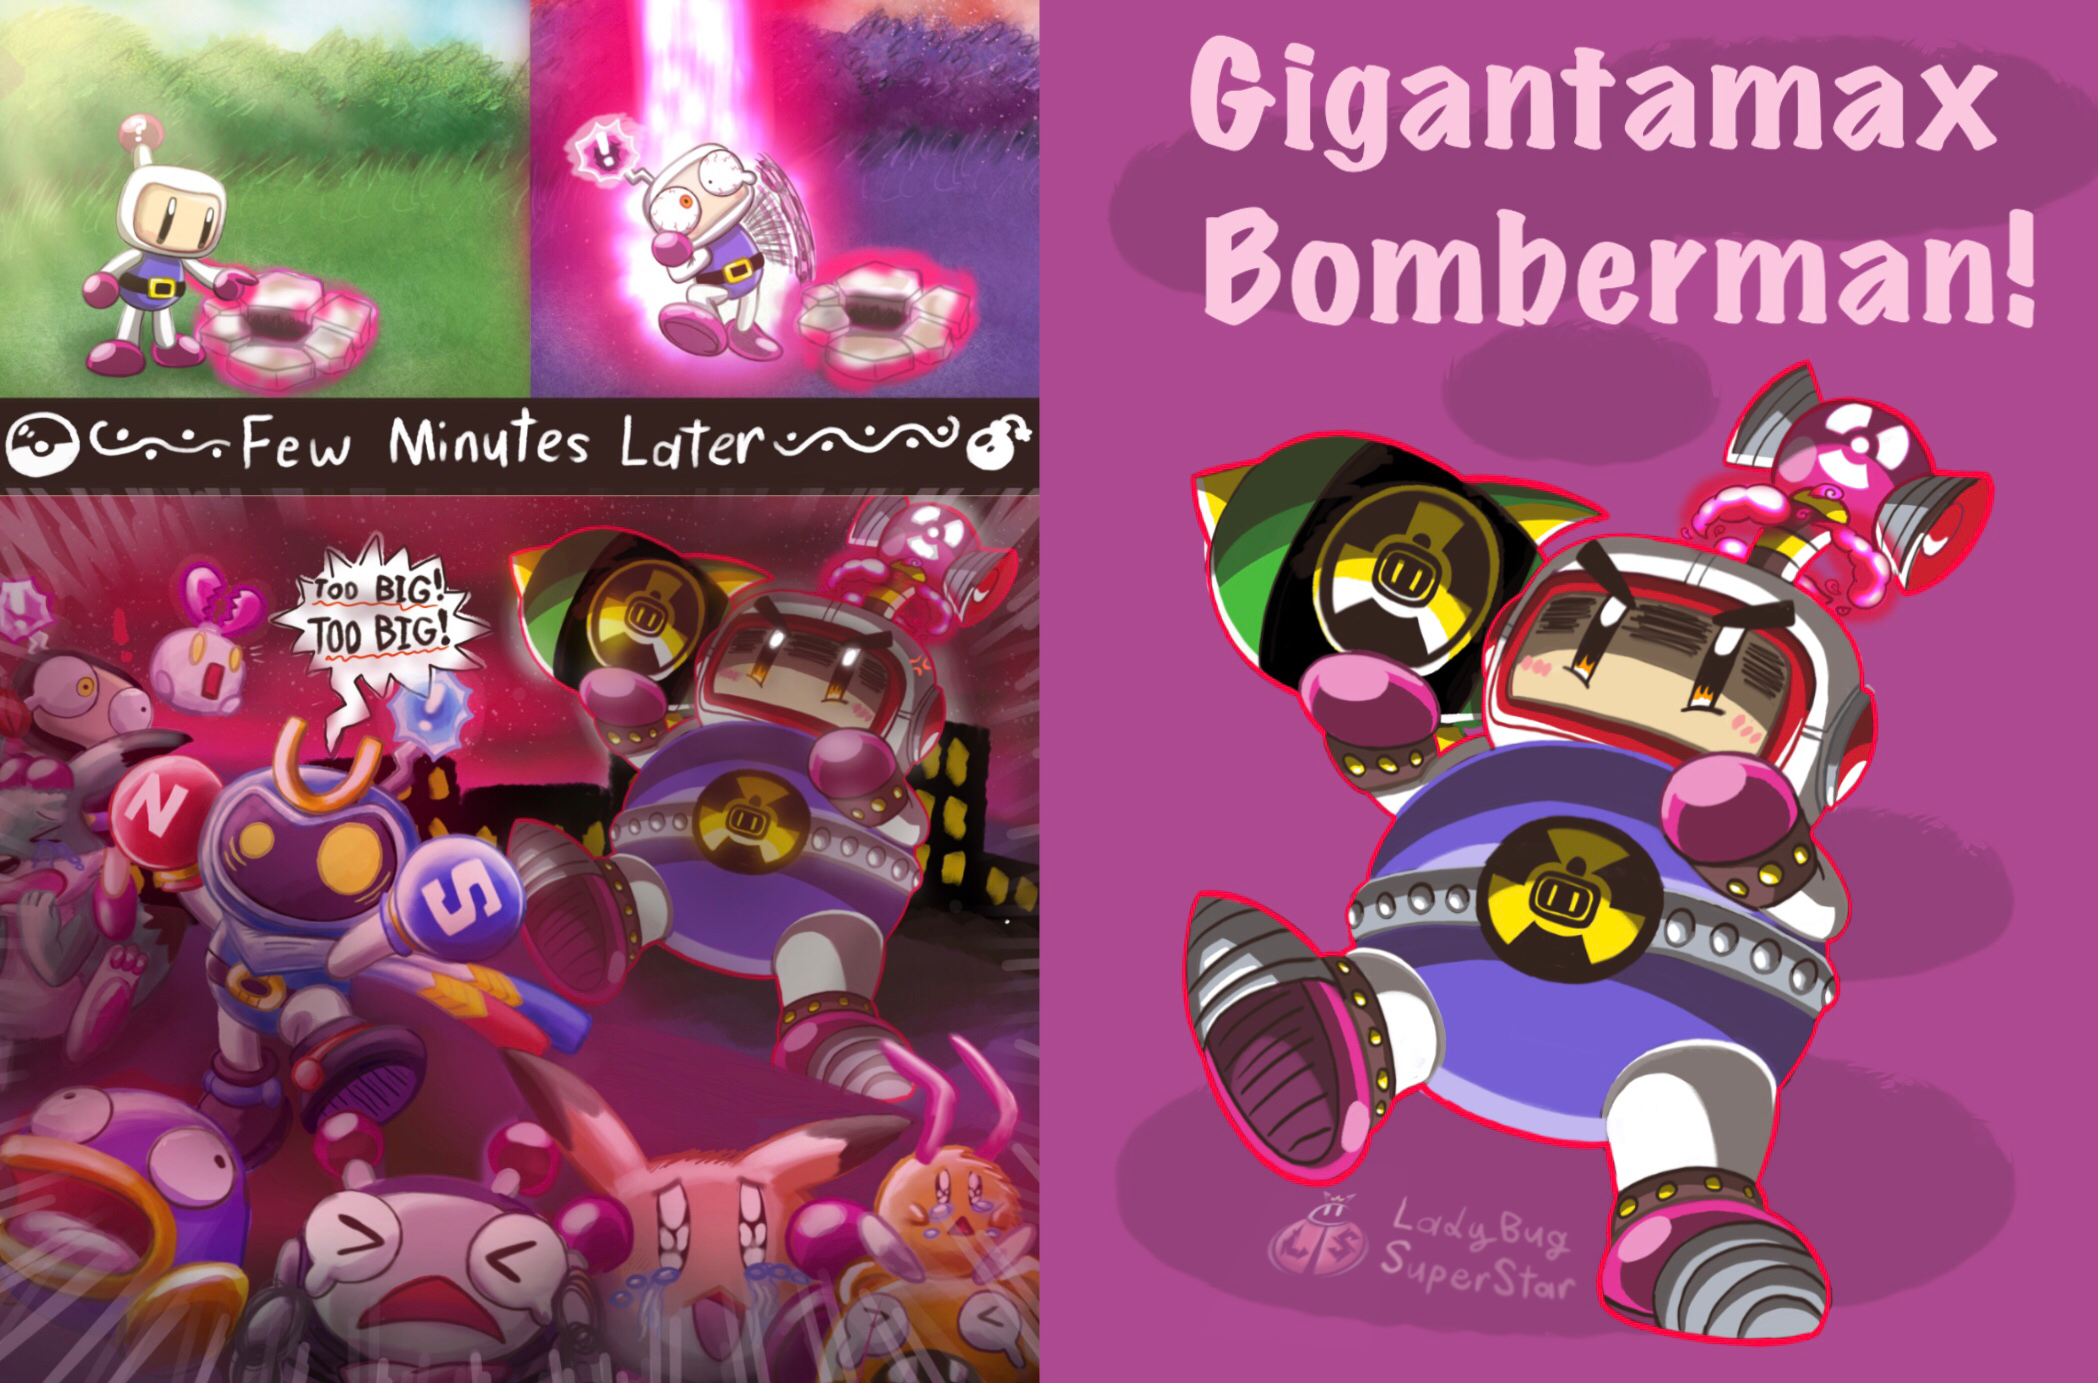 My fan art of that boss from Super Bomberman 2 : r/bomberman